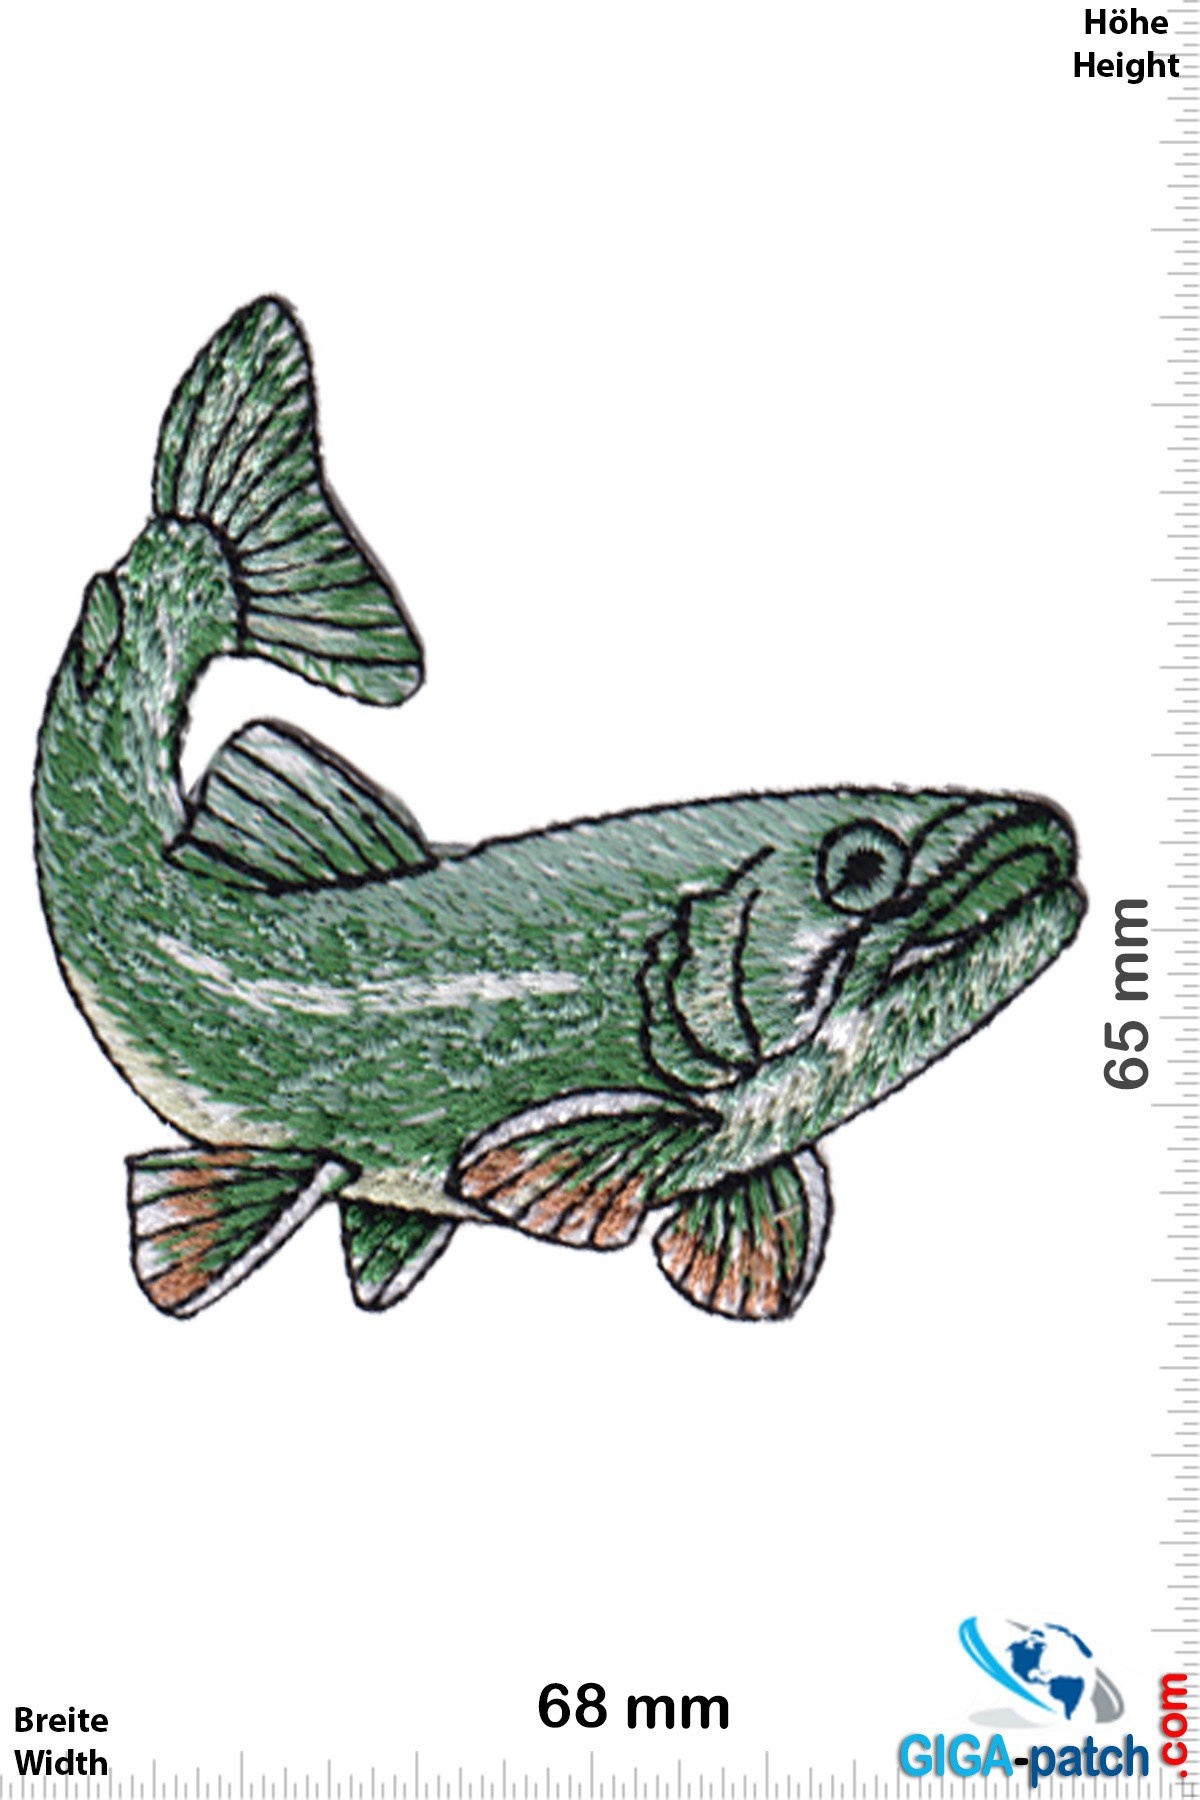 Bass - Perch - fishing